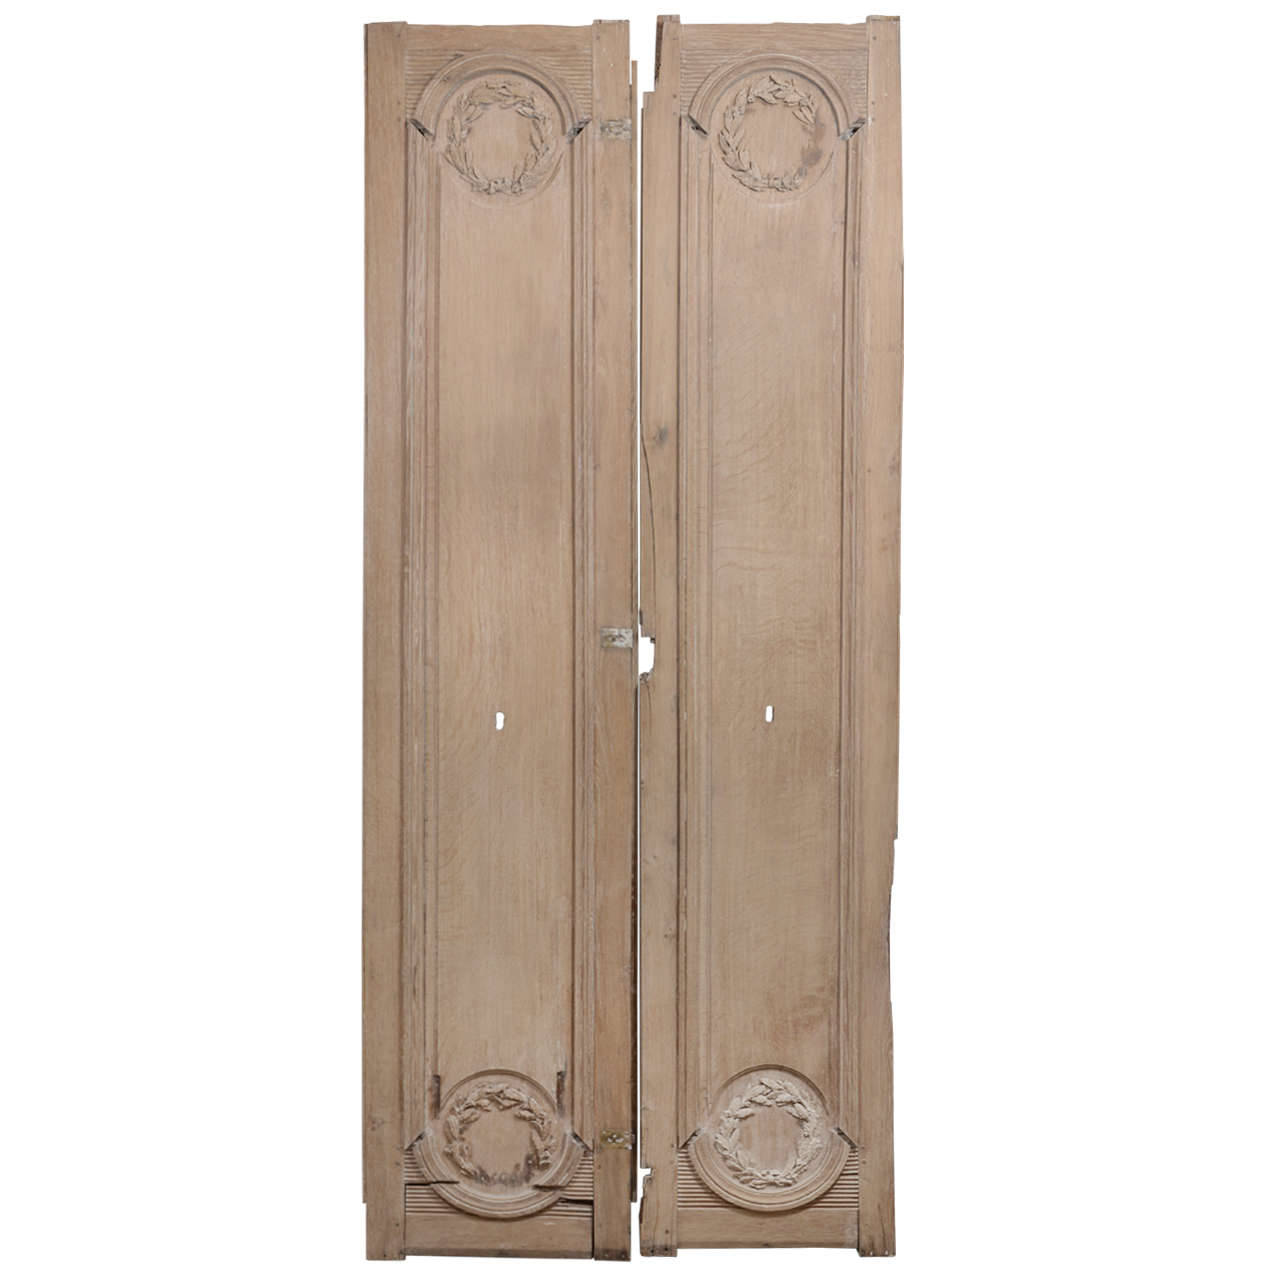 Pair of 18th Century Door Panels